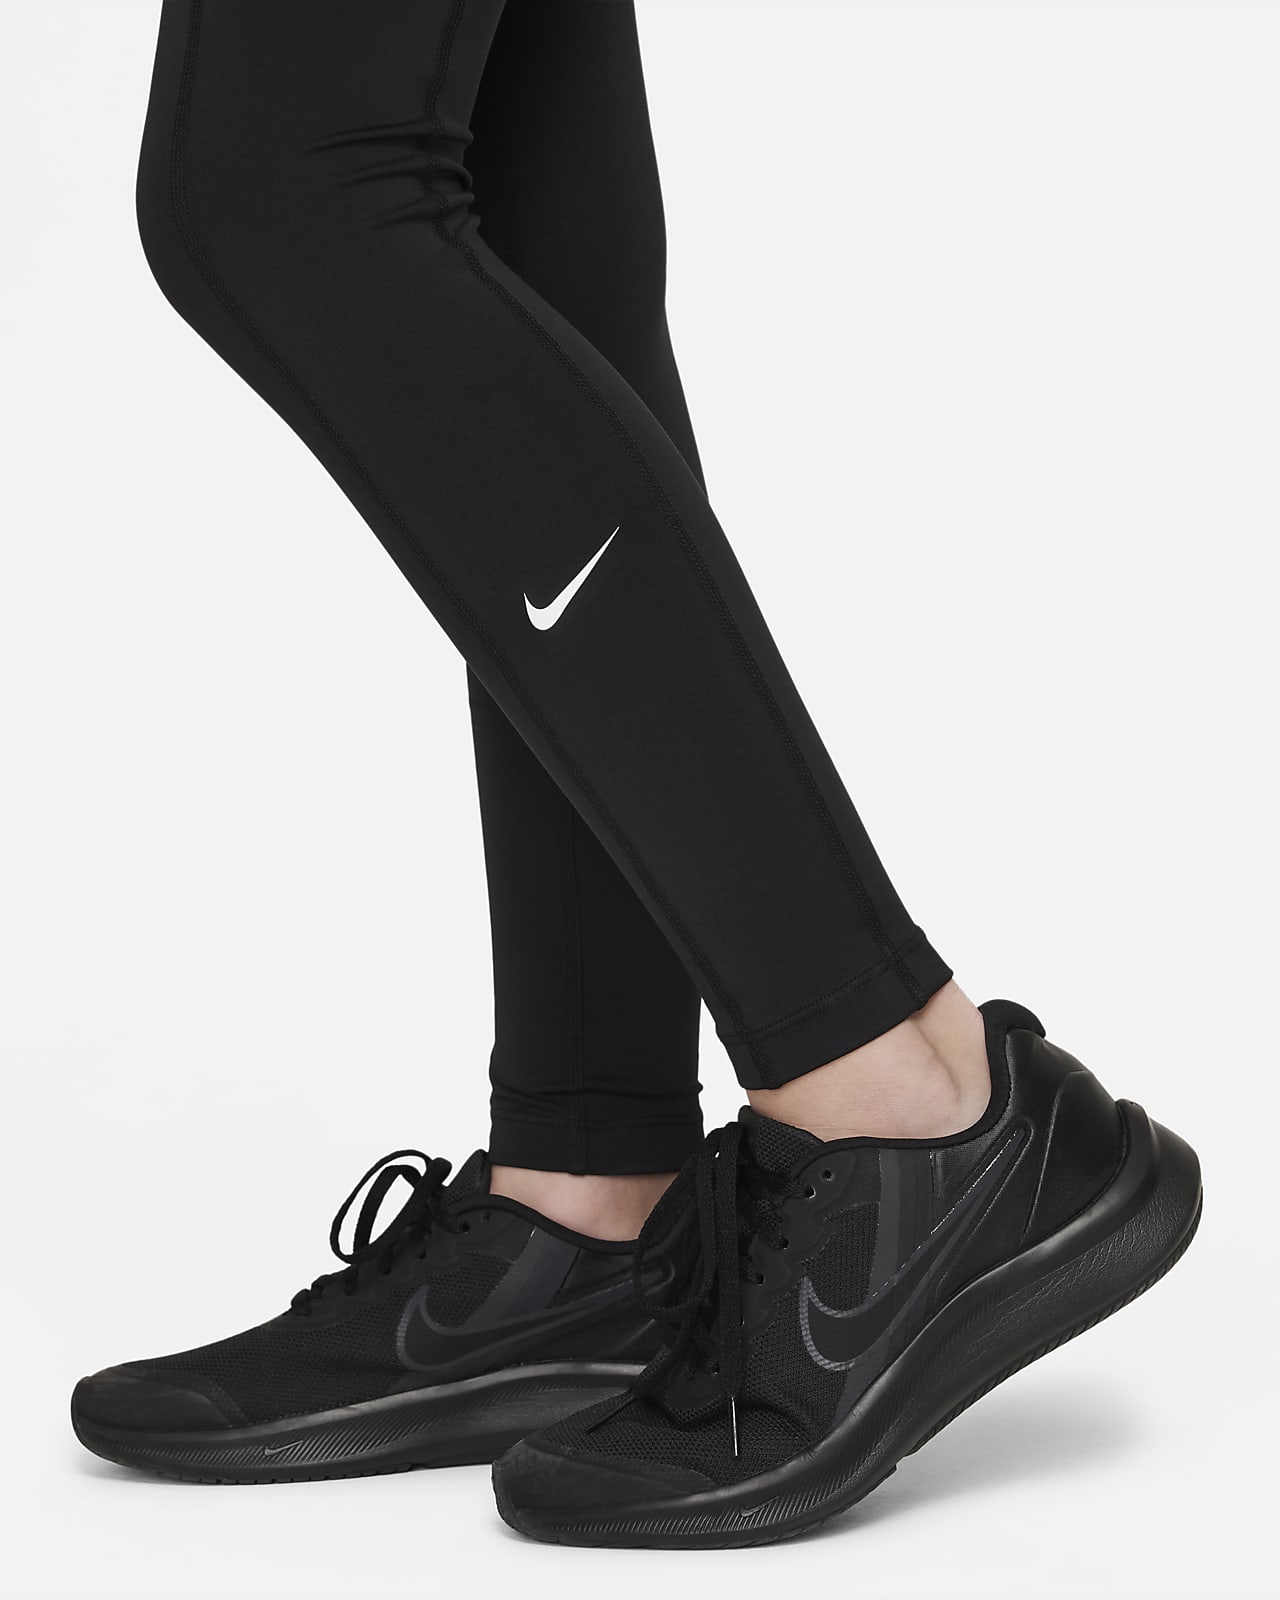 Nike Girls Grey Dri Fit Leggings